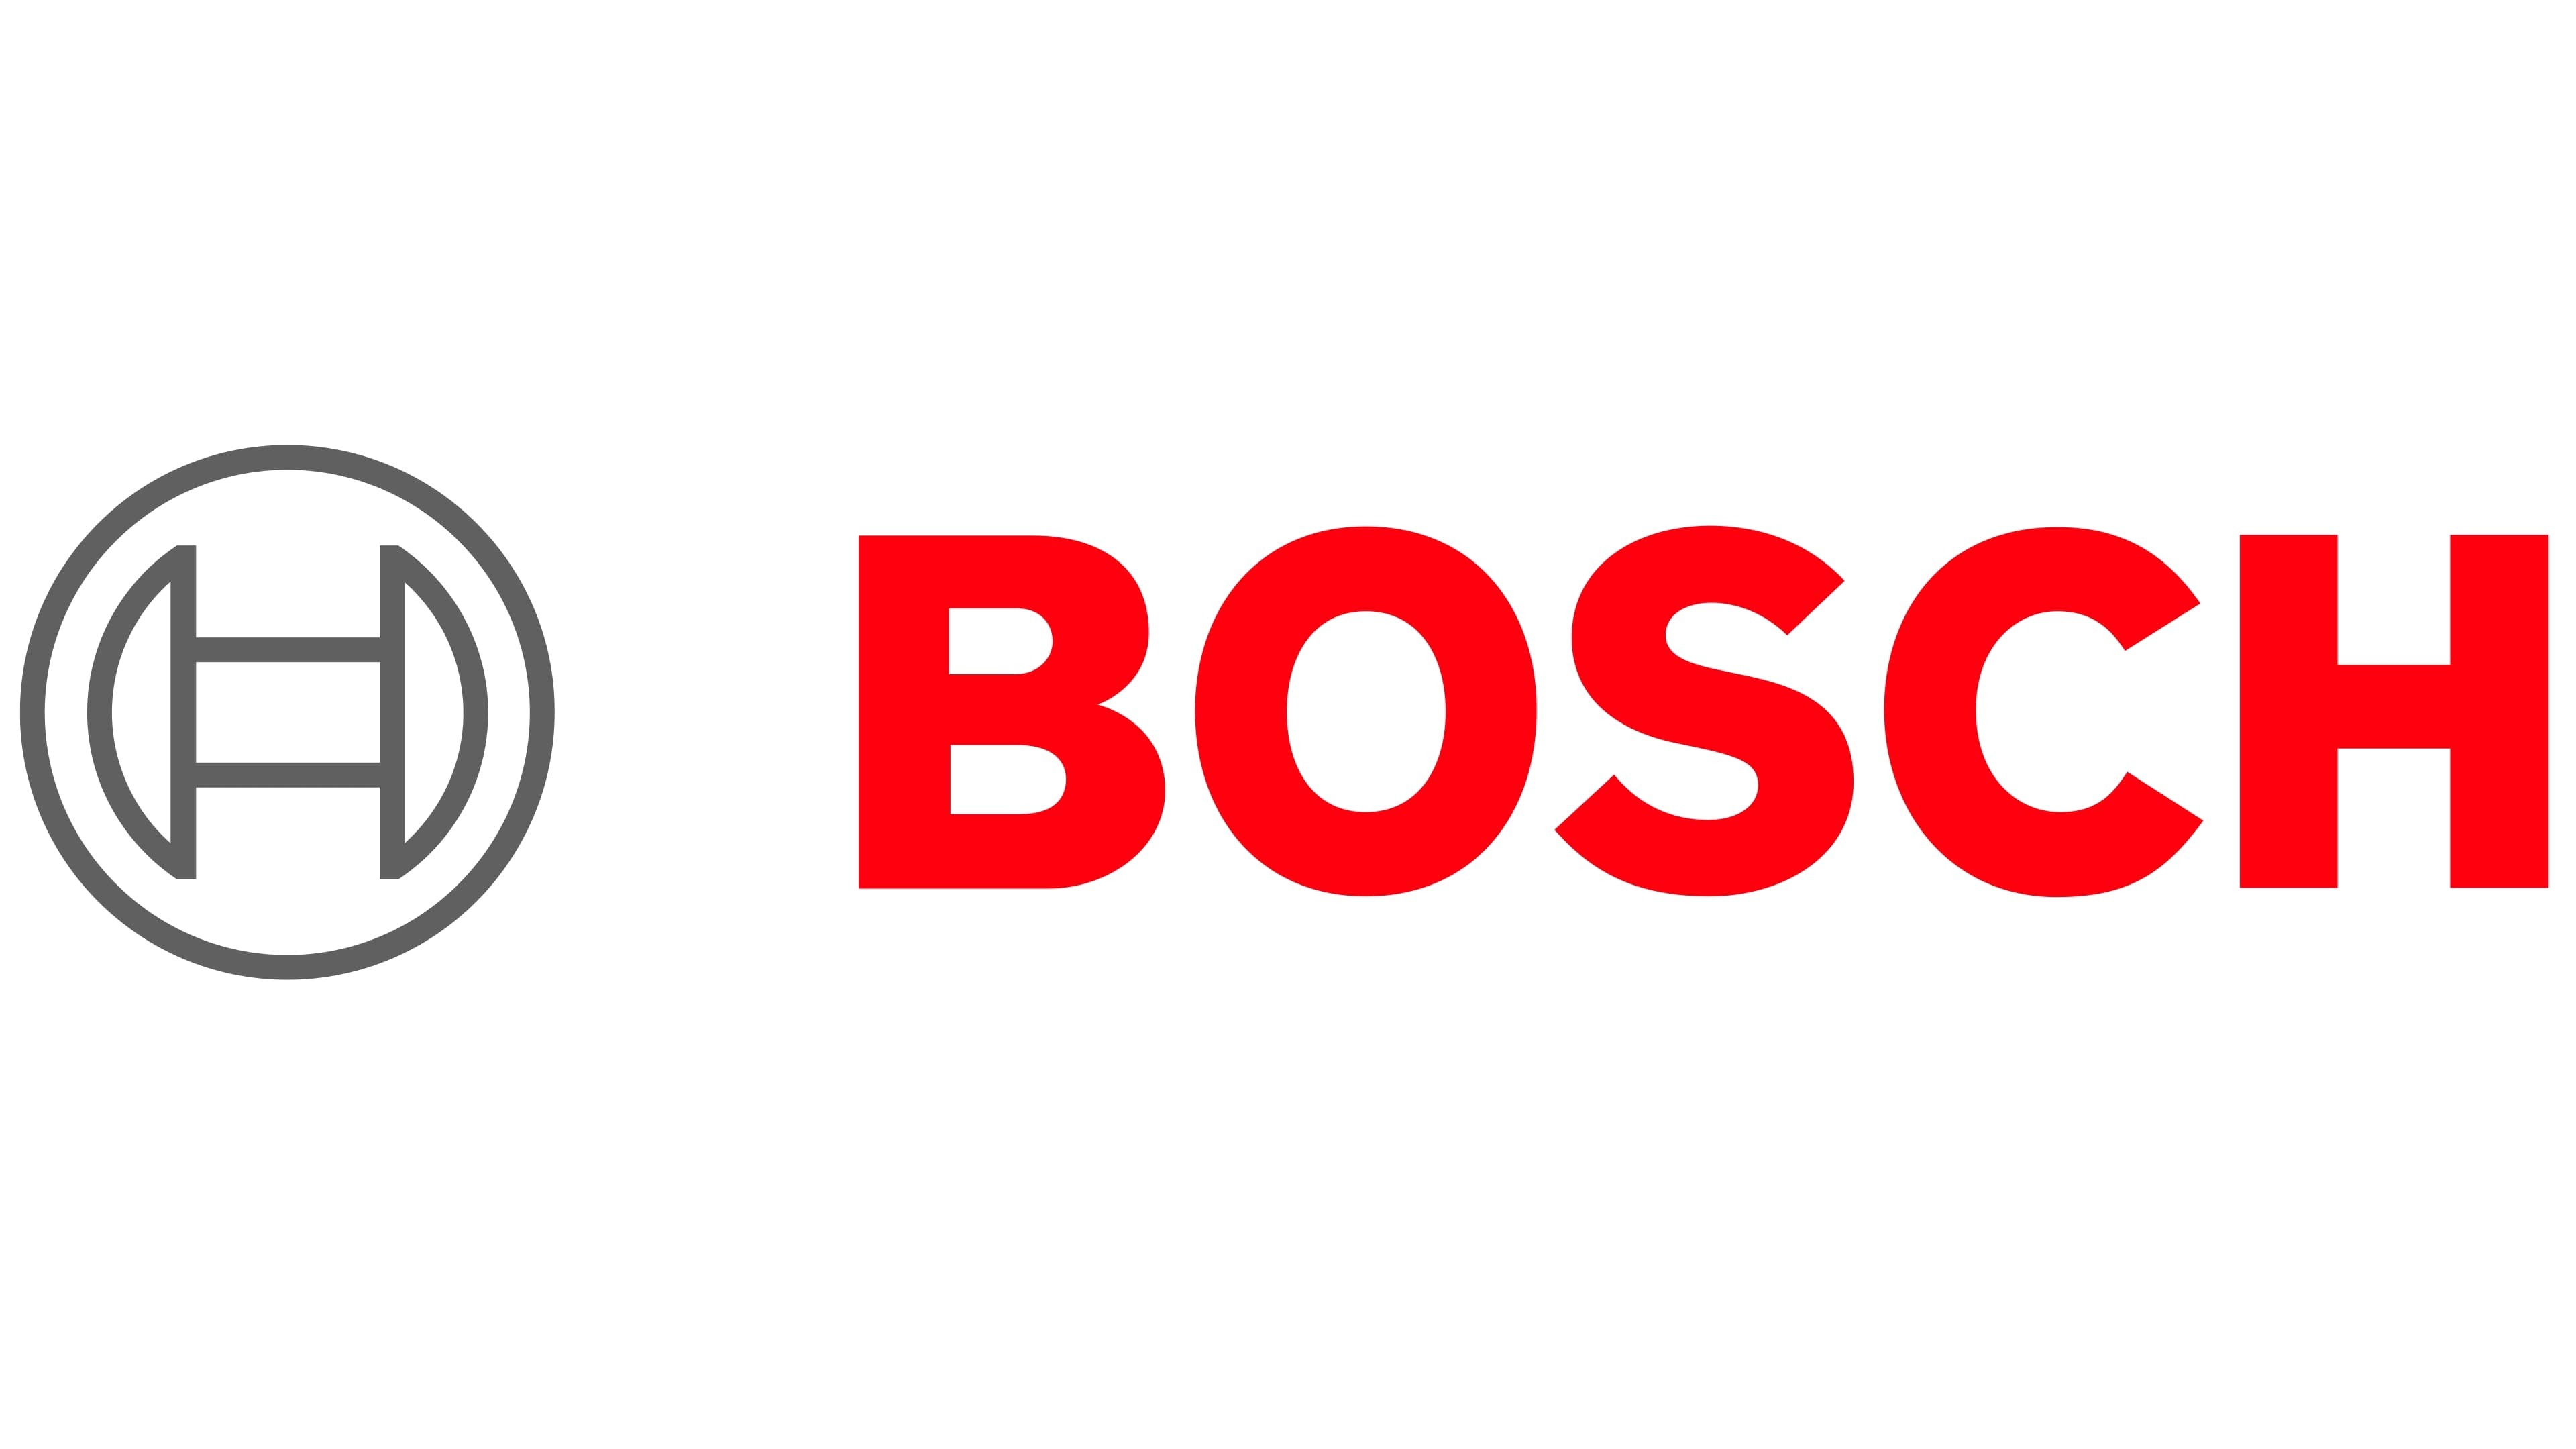 Bosch Elettrodomestici